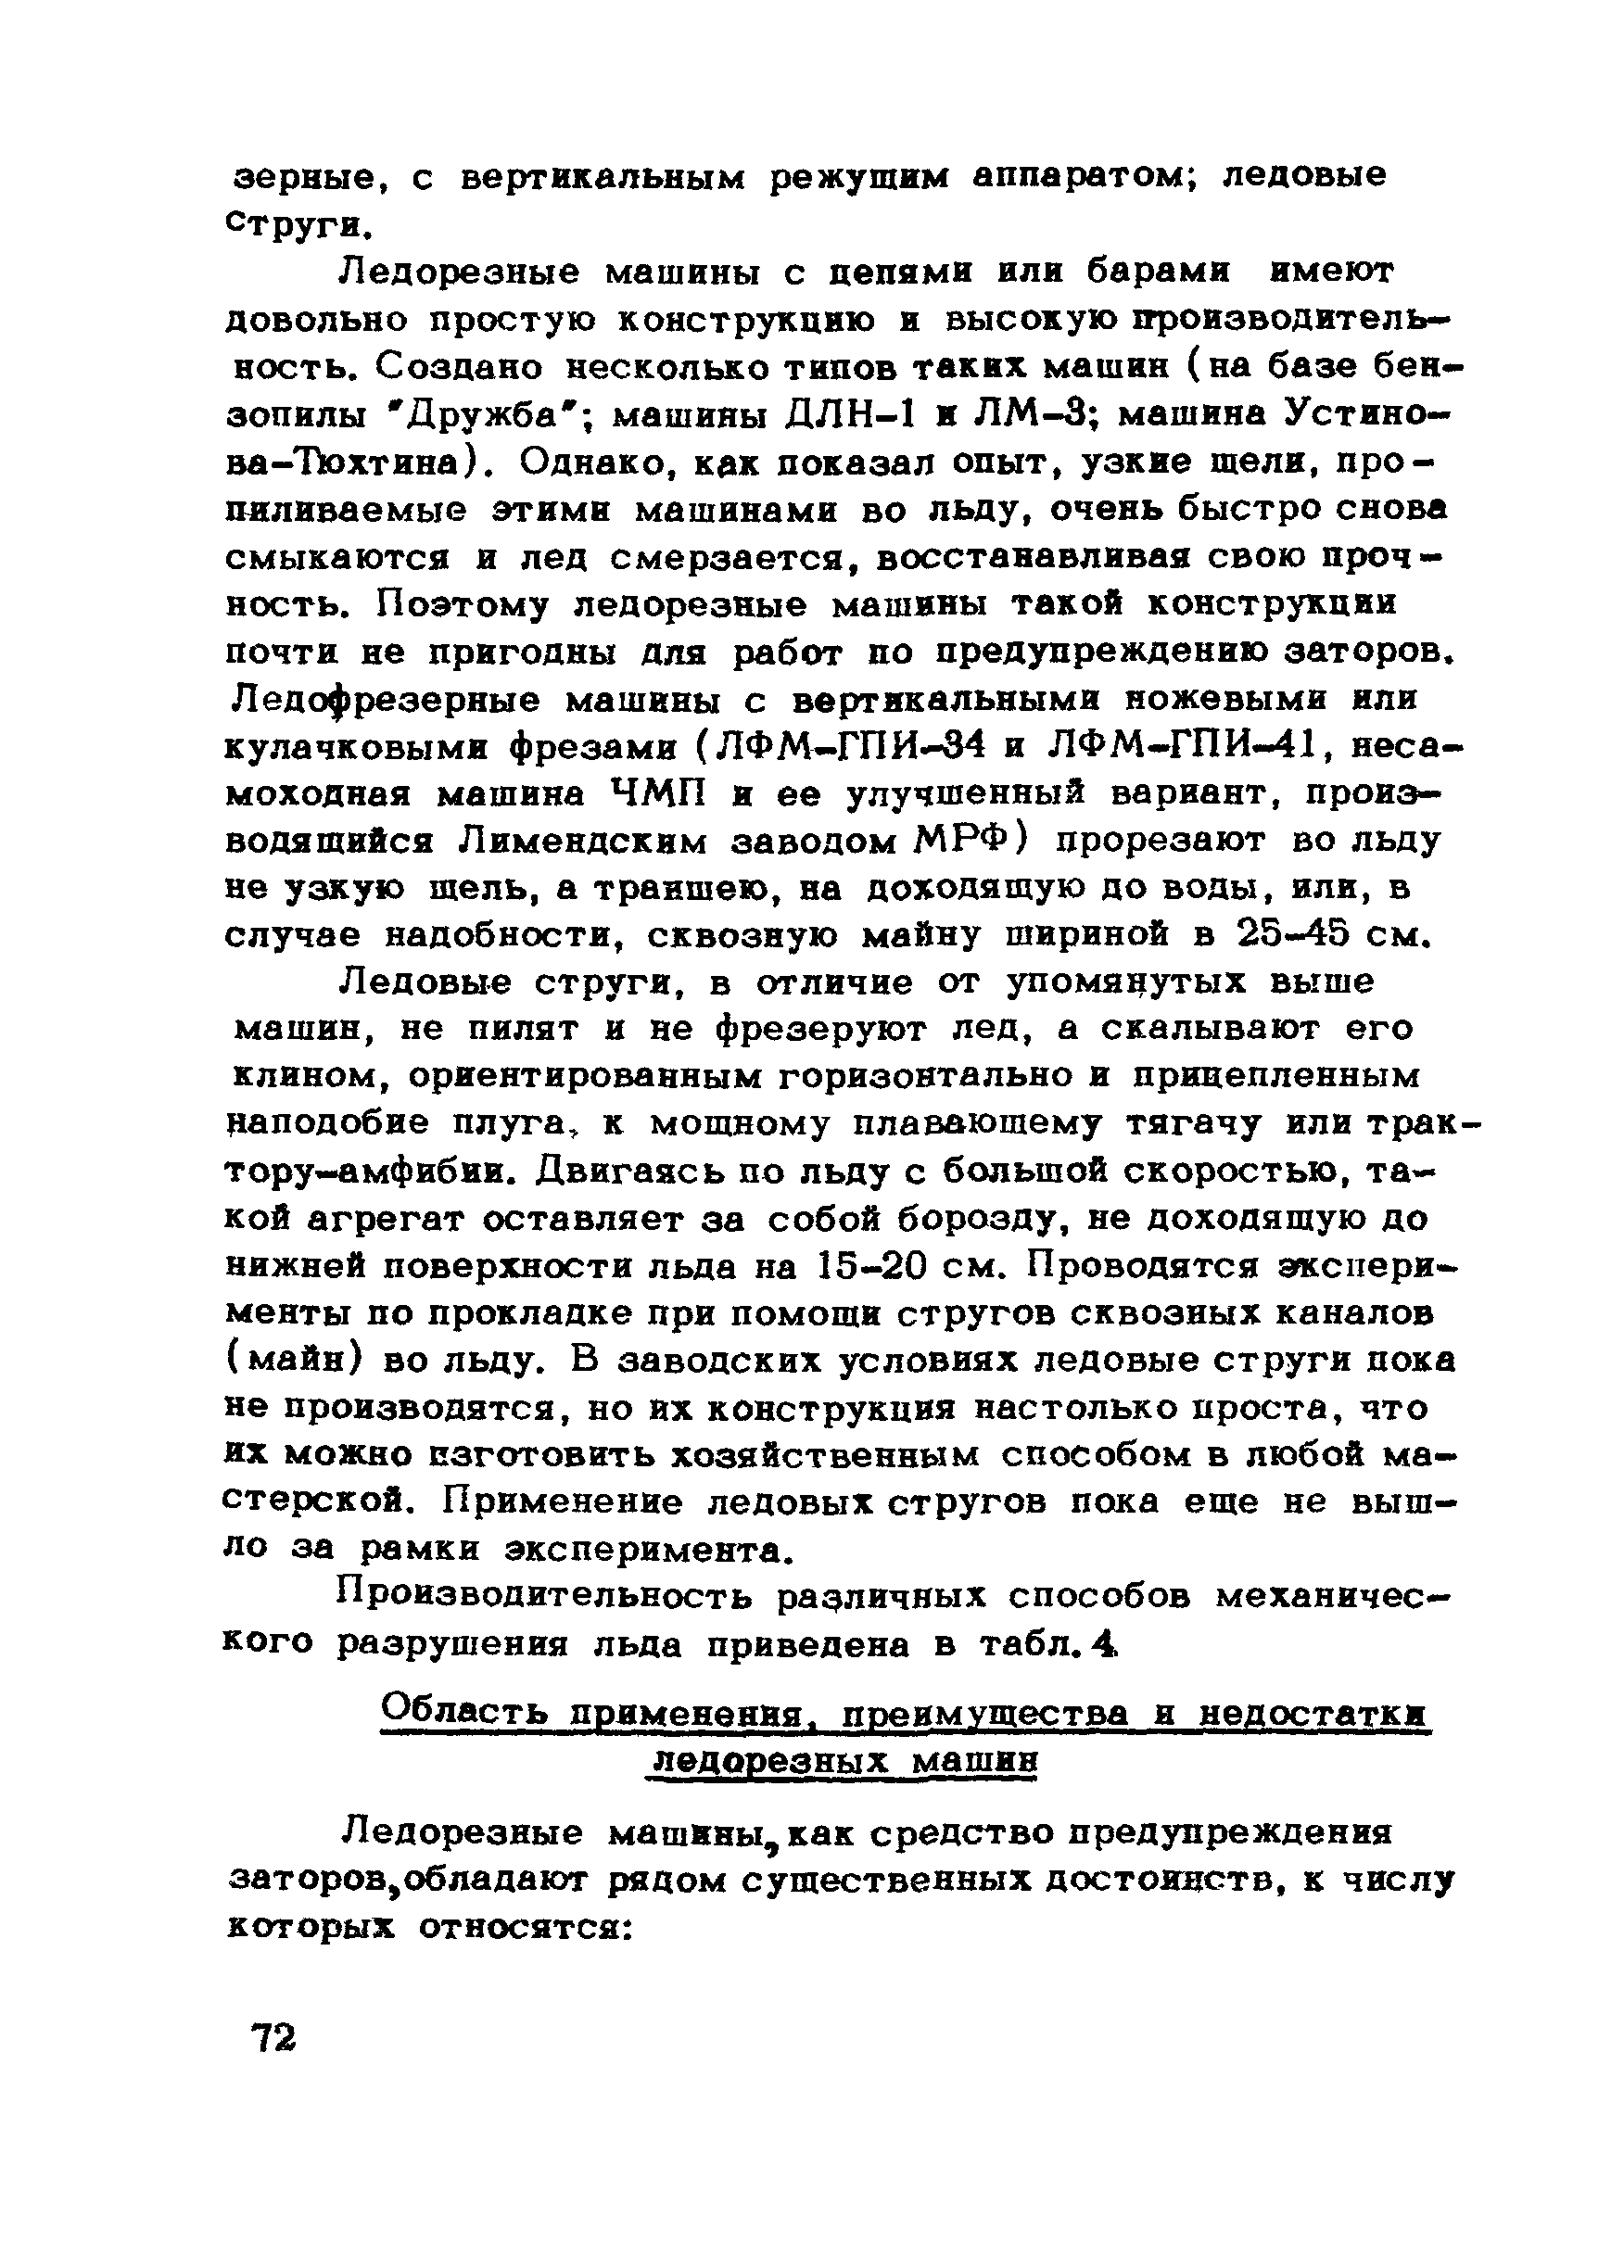 ВСН 028-70